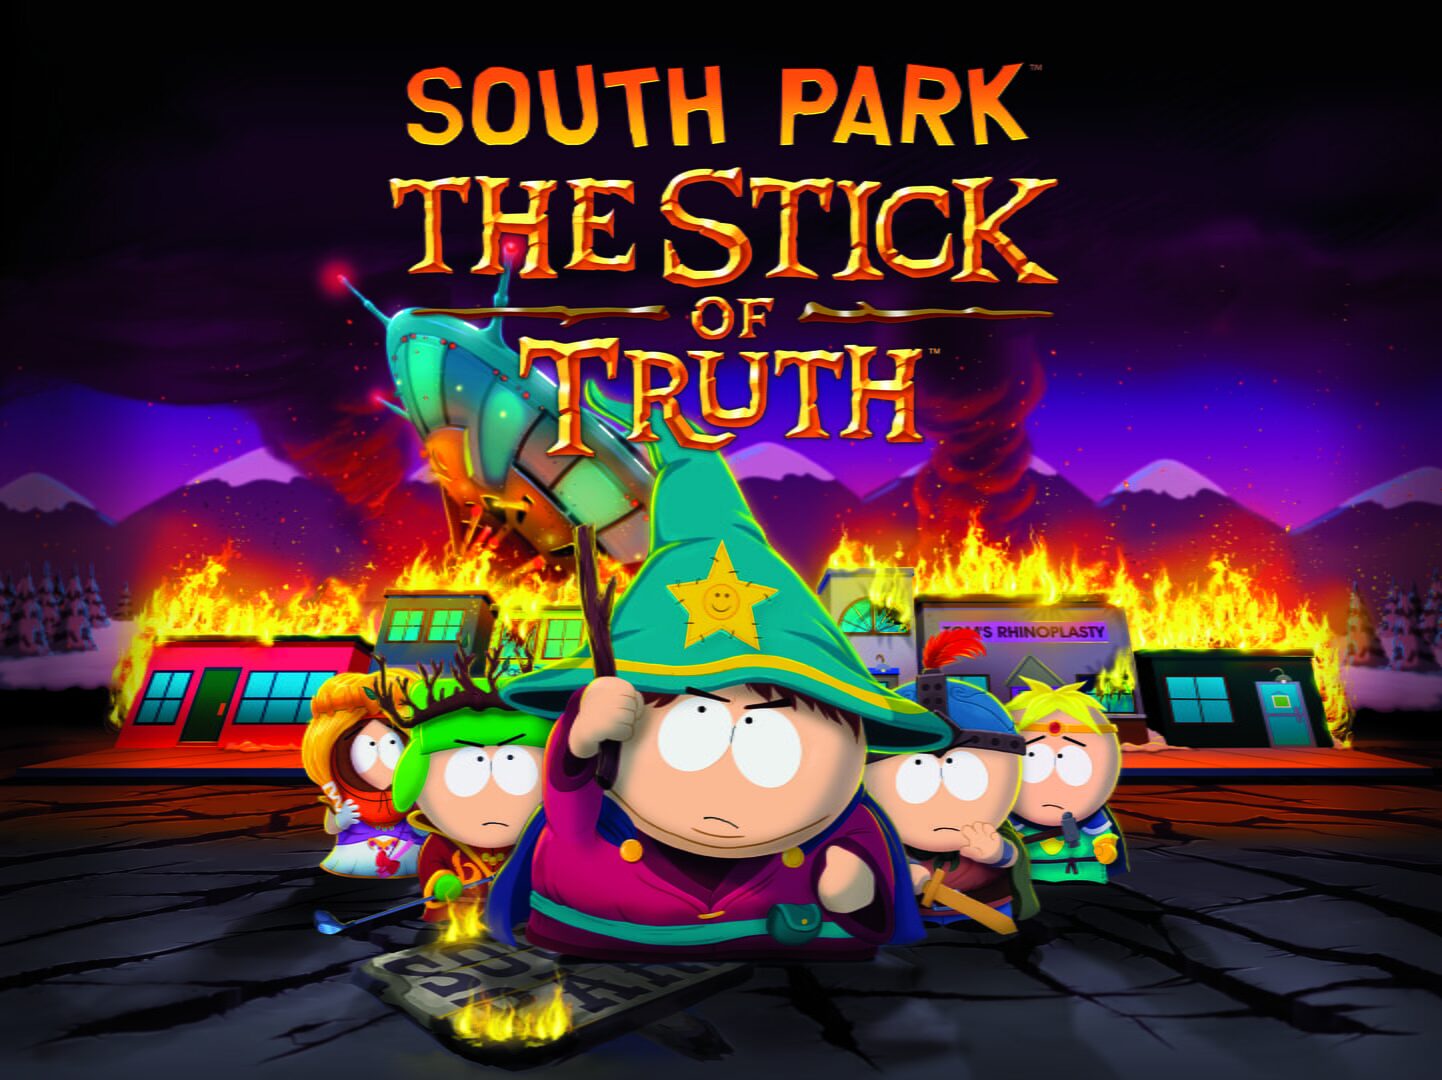 Arte - South Park: The Stick of Truth